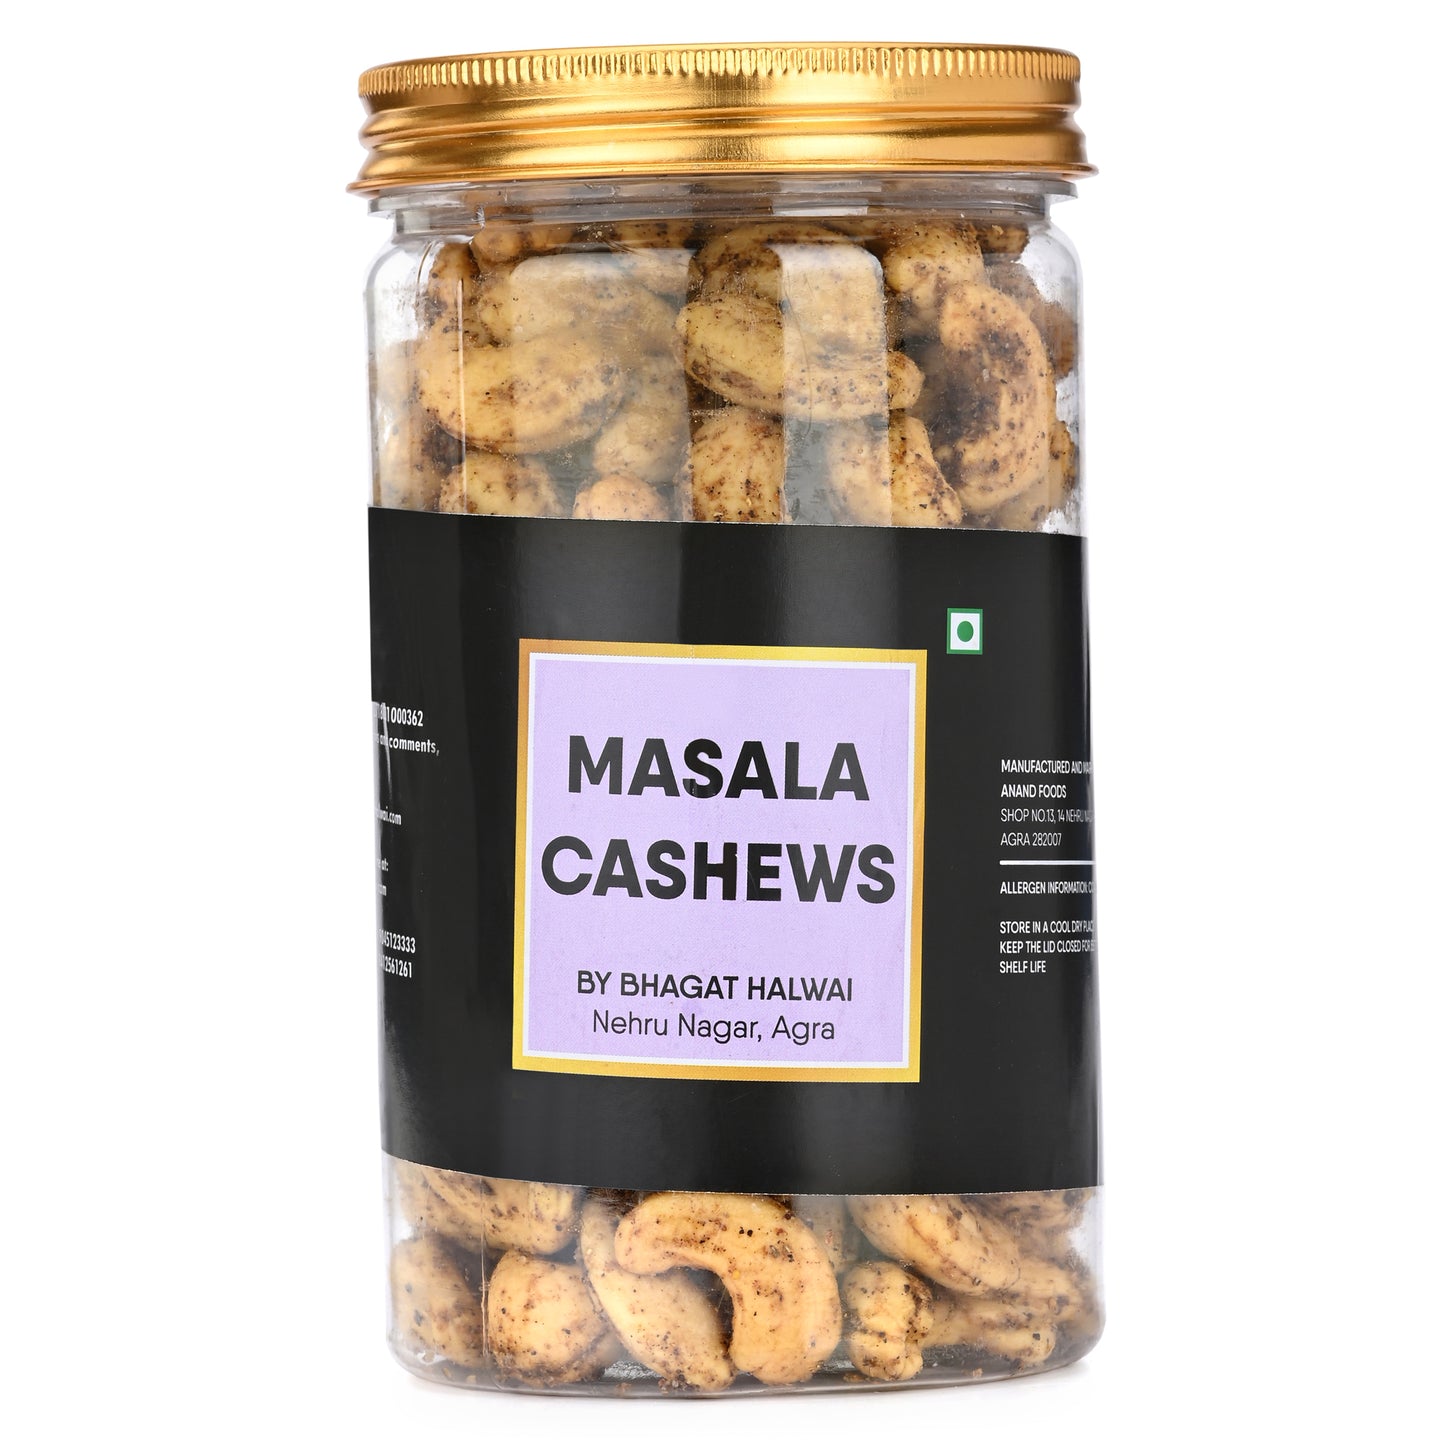 MASALA CASHEWS